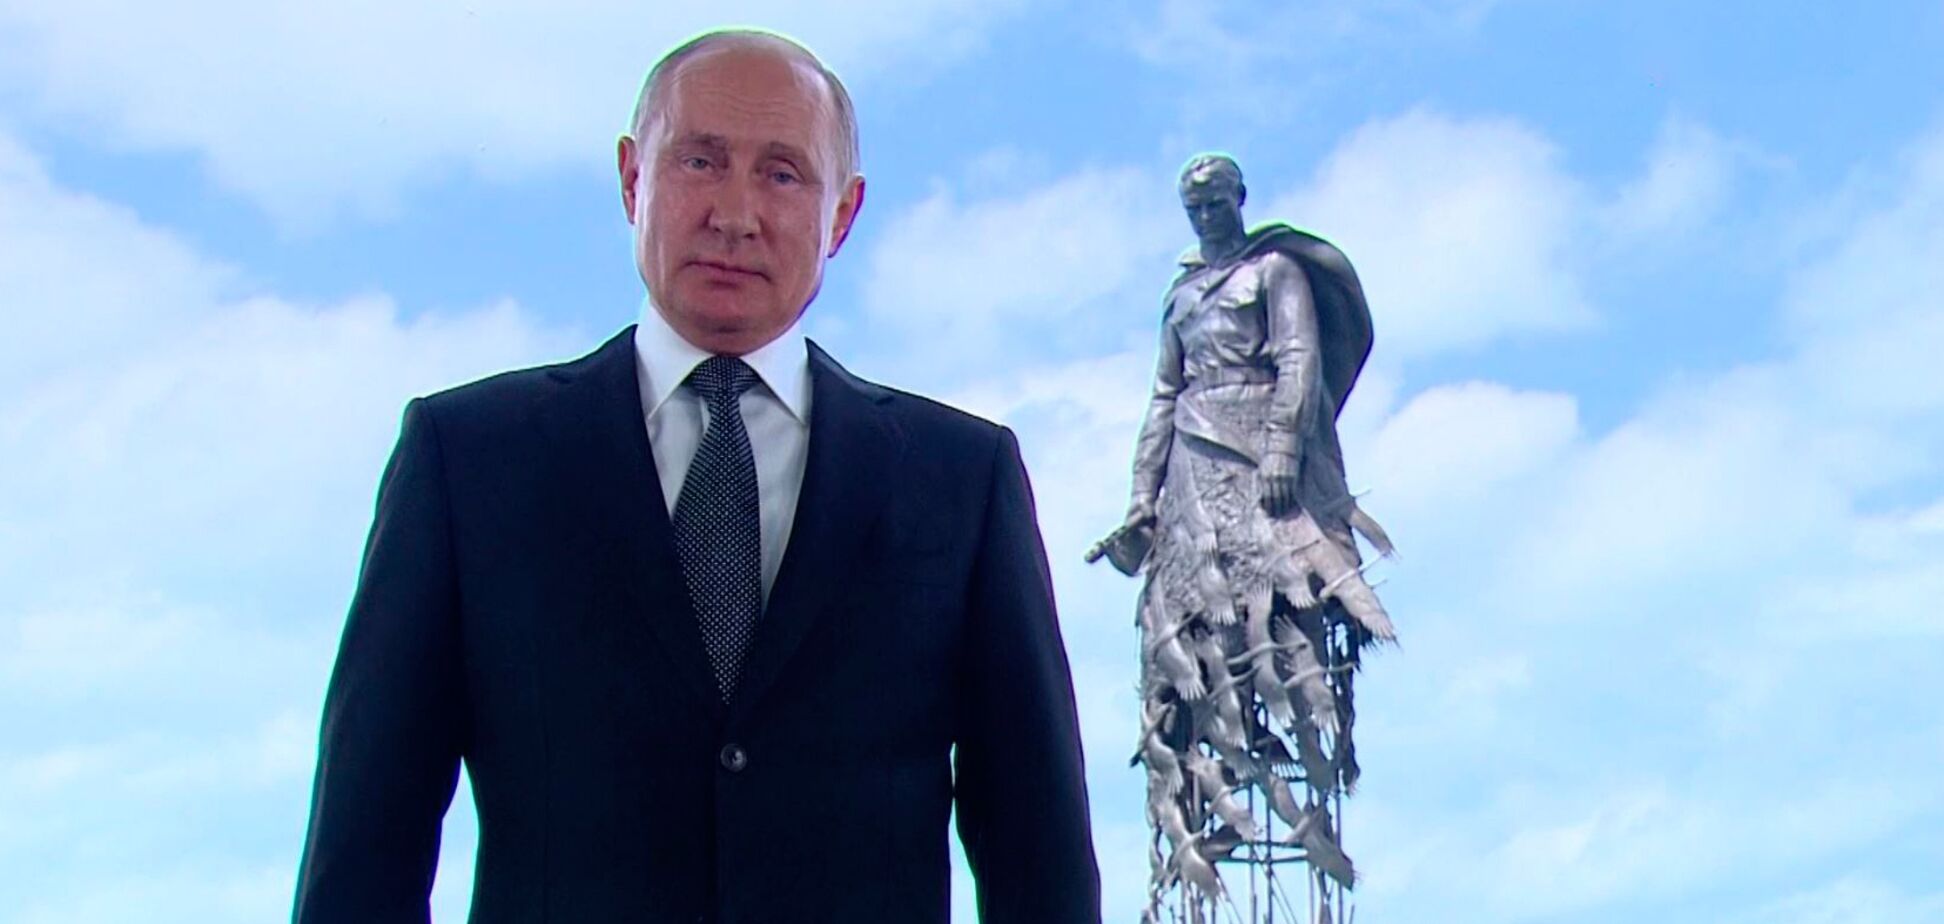 Користувачі соцмереж знайшли орфографічну помилку в монументі, який відкрили Путін і Лукашенко